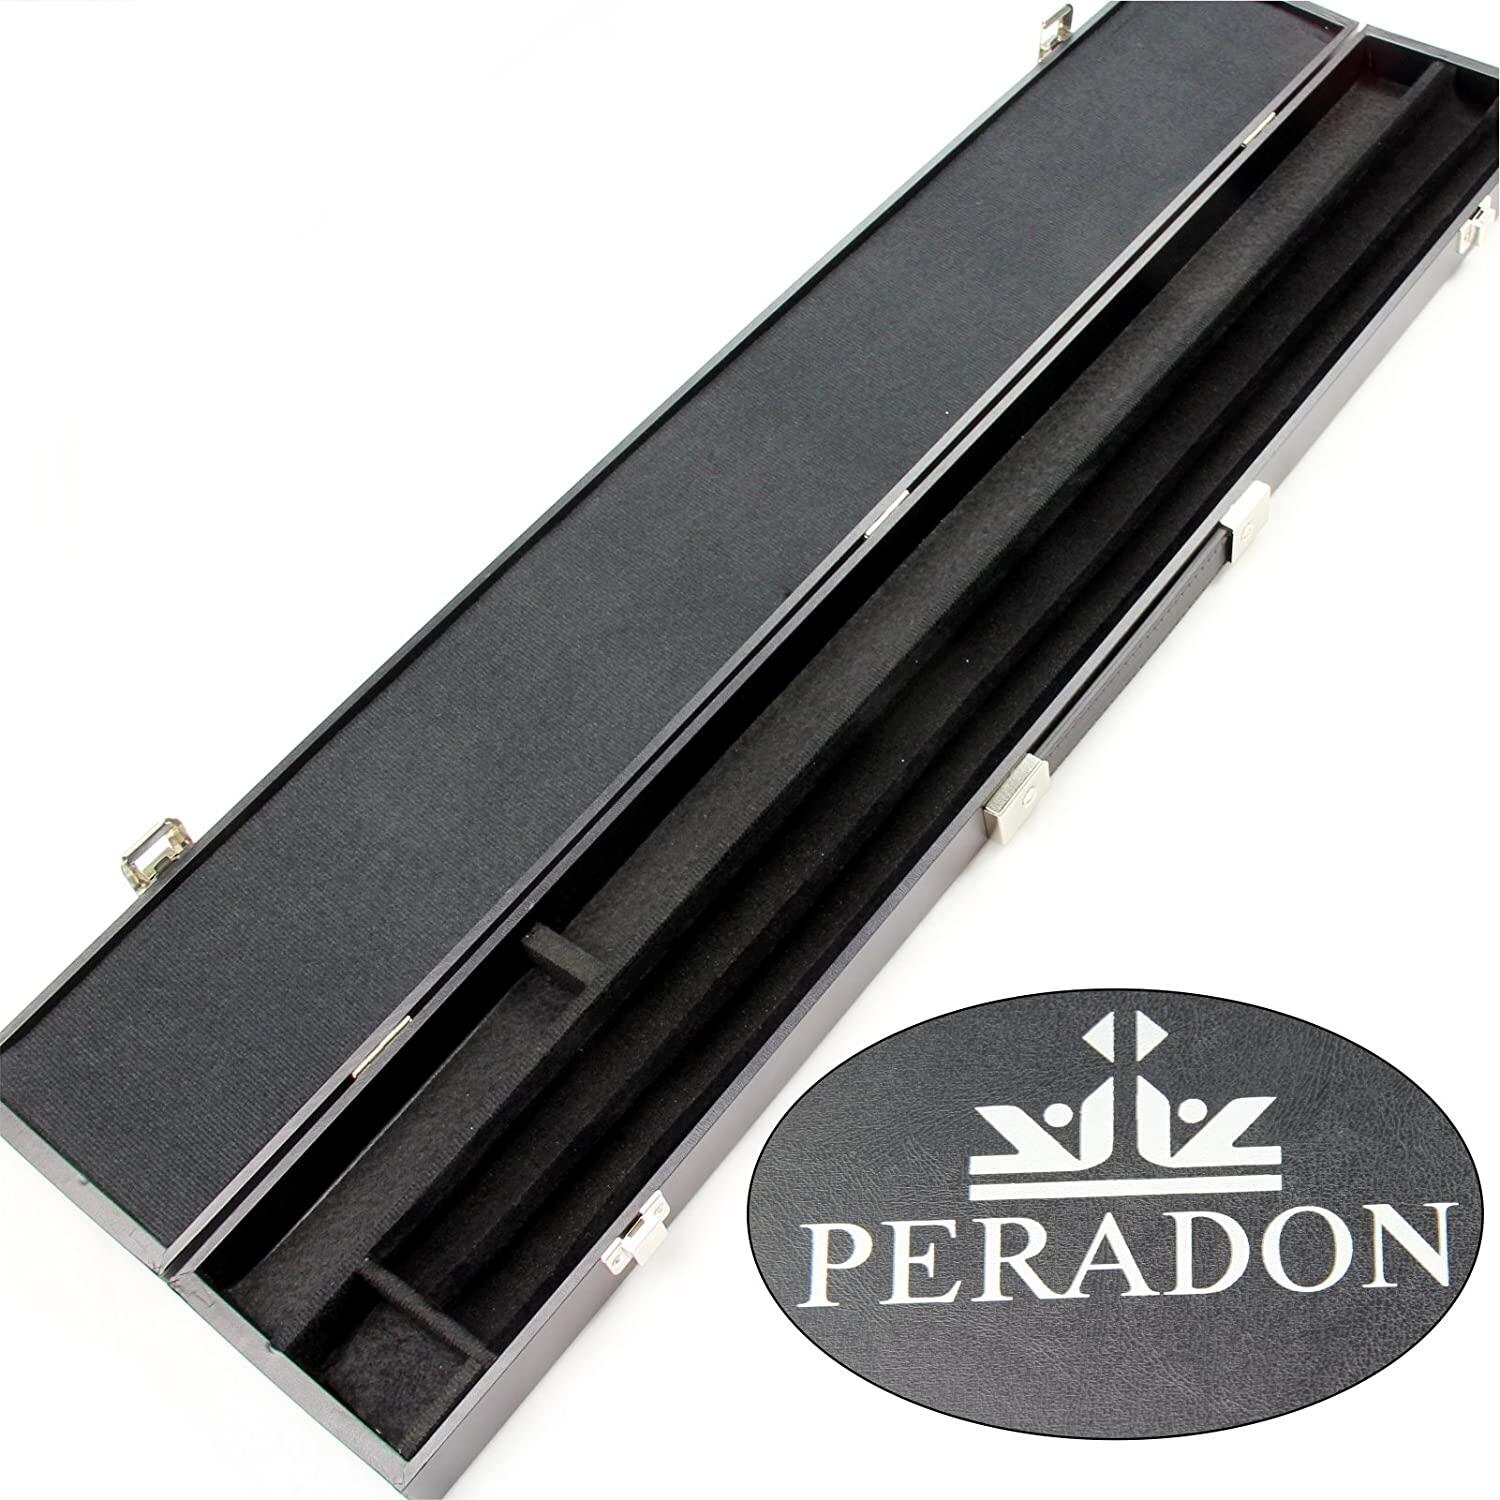 PERADON PERADON WIDE BLACK ATTACHE 2 PIECE SNOOKER/POOL CASE &amp; EXTENSION